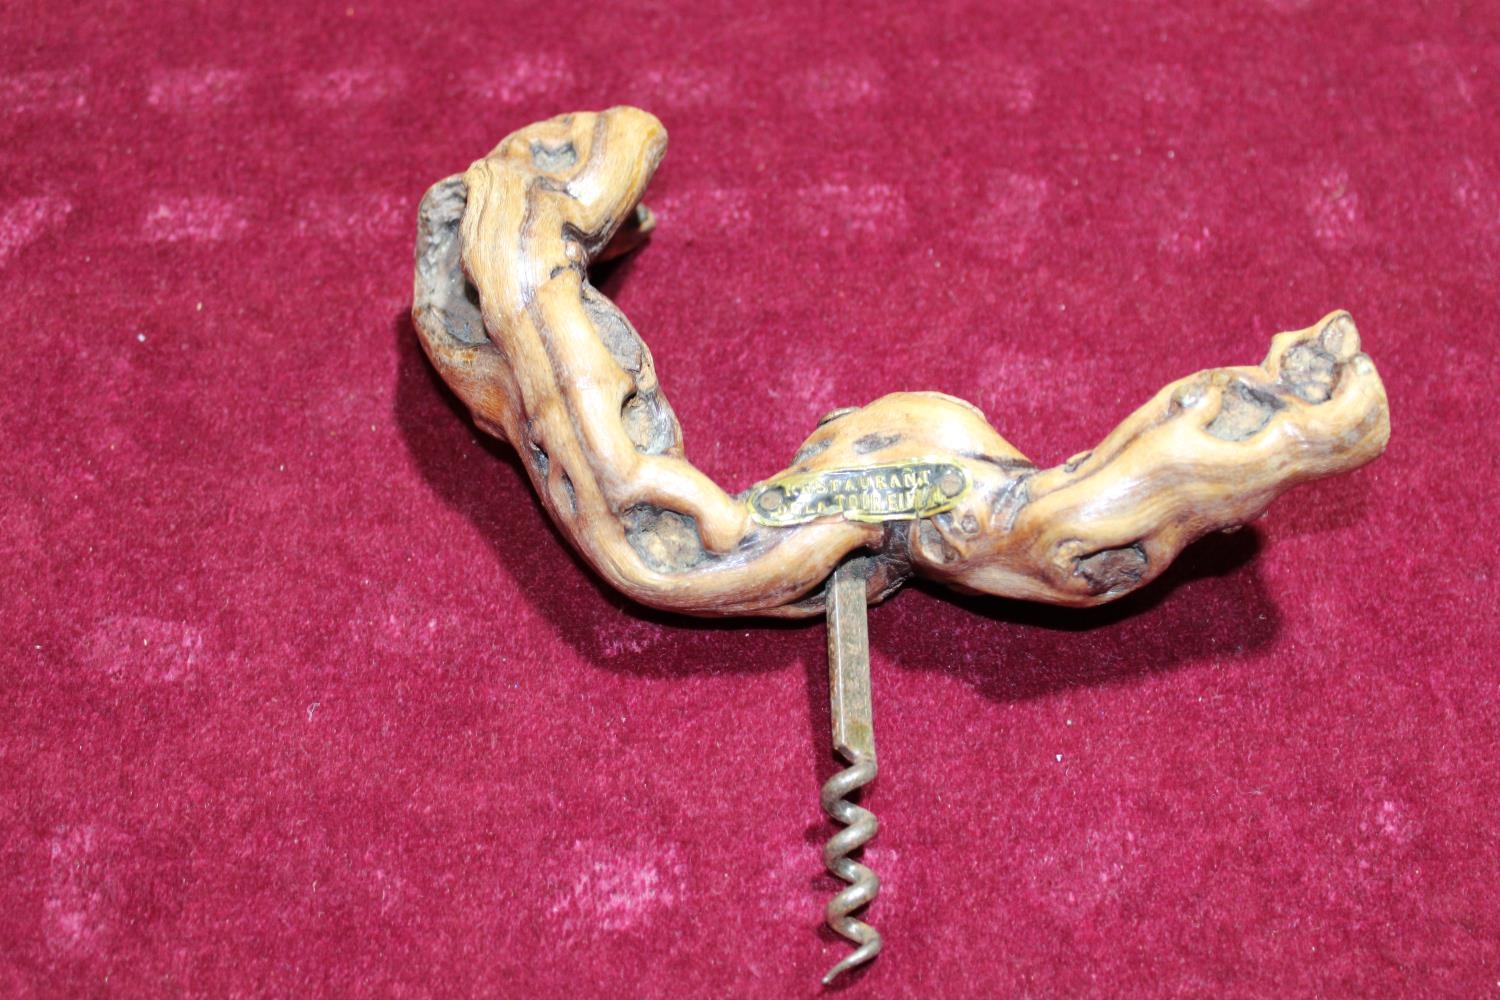 A petrified wooden handled corkscrew